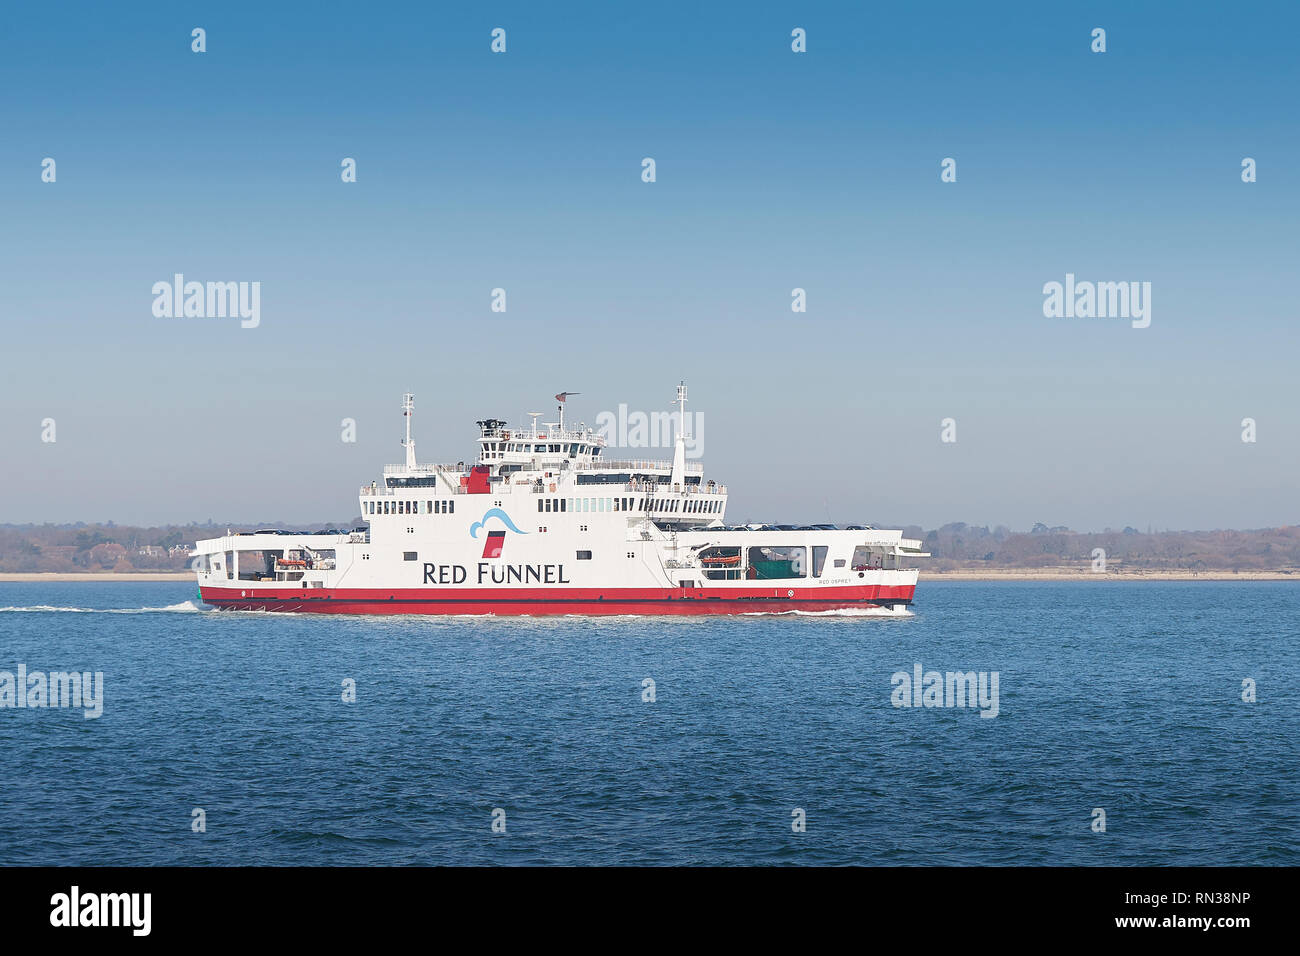 La Red Funnel Ferries, veicolo traghetto (traghetto per auto), MV FOSPREY ROSSO, lungo il tragitto dal Porto di Southampton all'Isola di Wight, Regno Unito. Febbraio 2019. Foto Stock